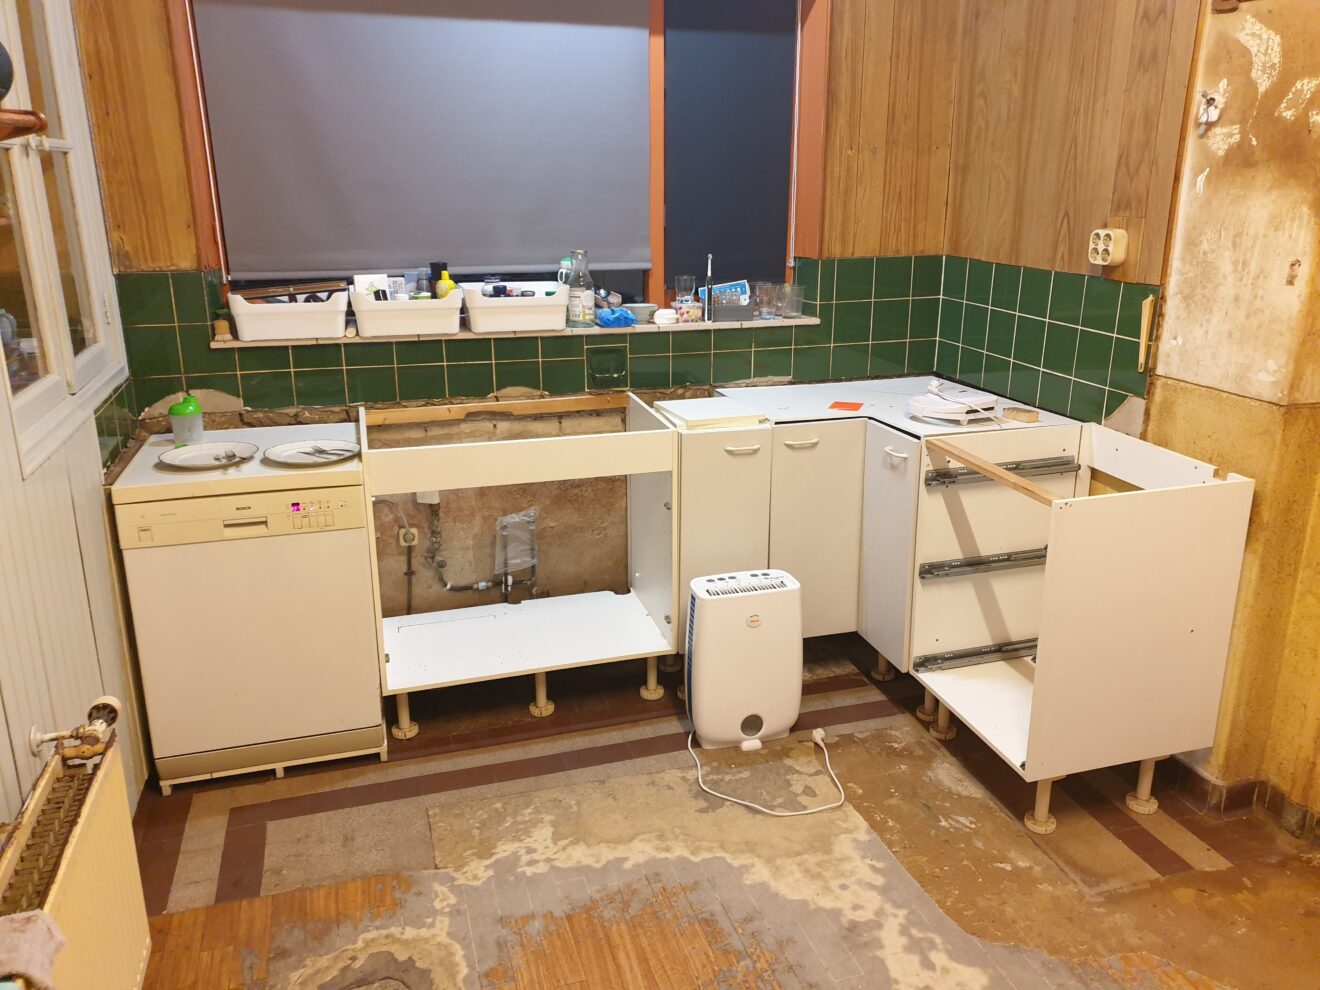 De keuken van Edwin in renovatie